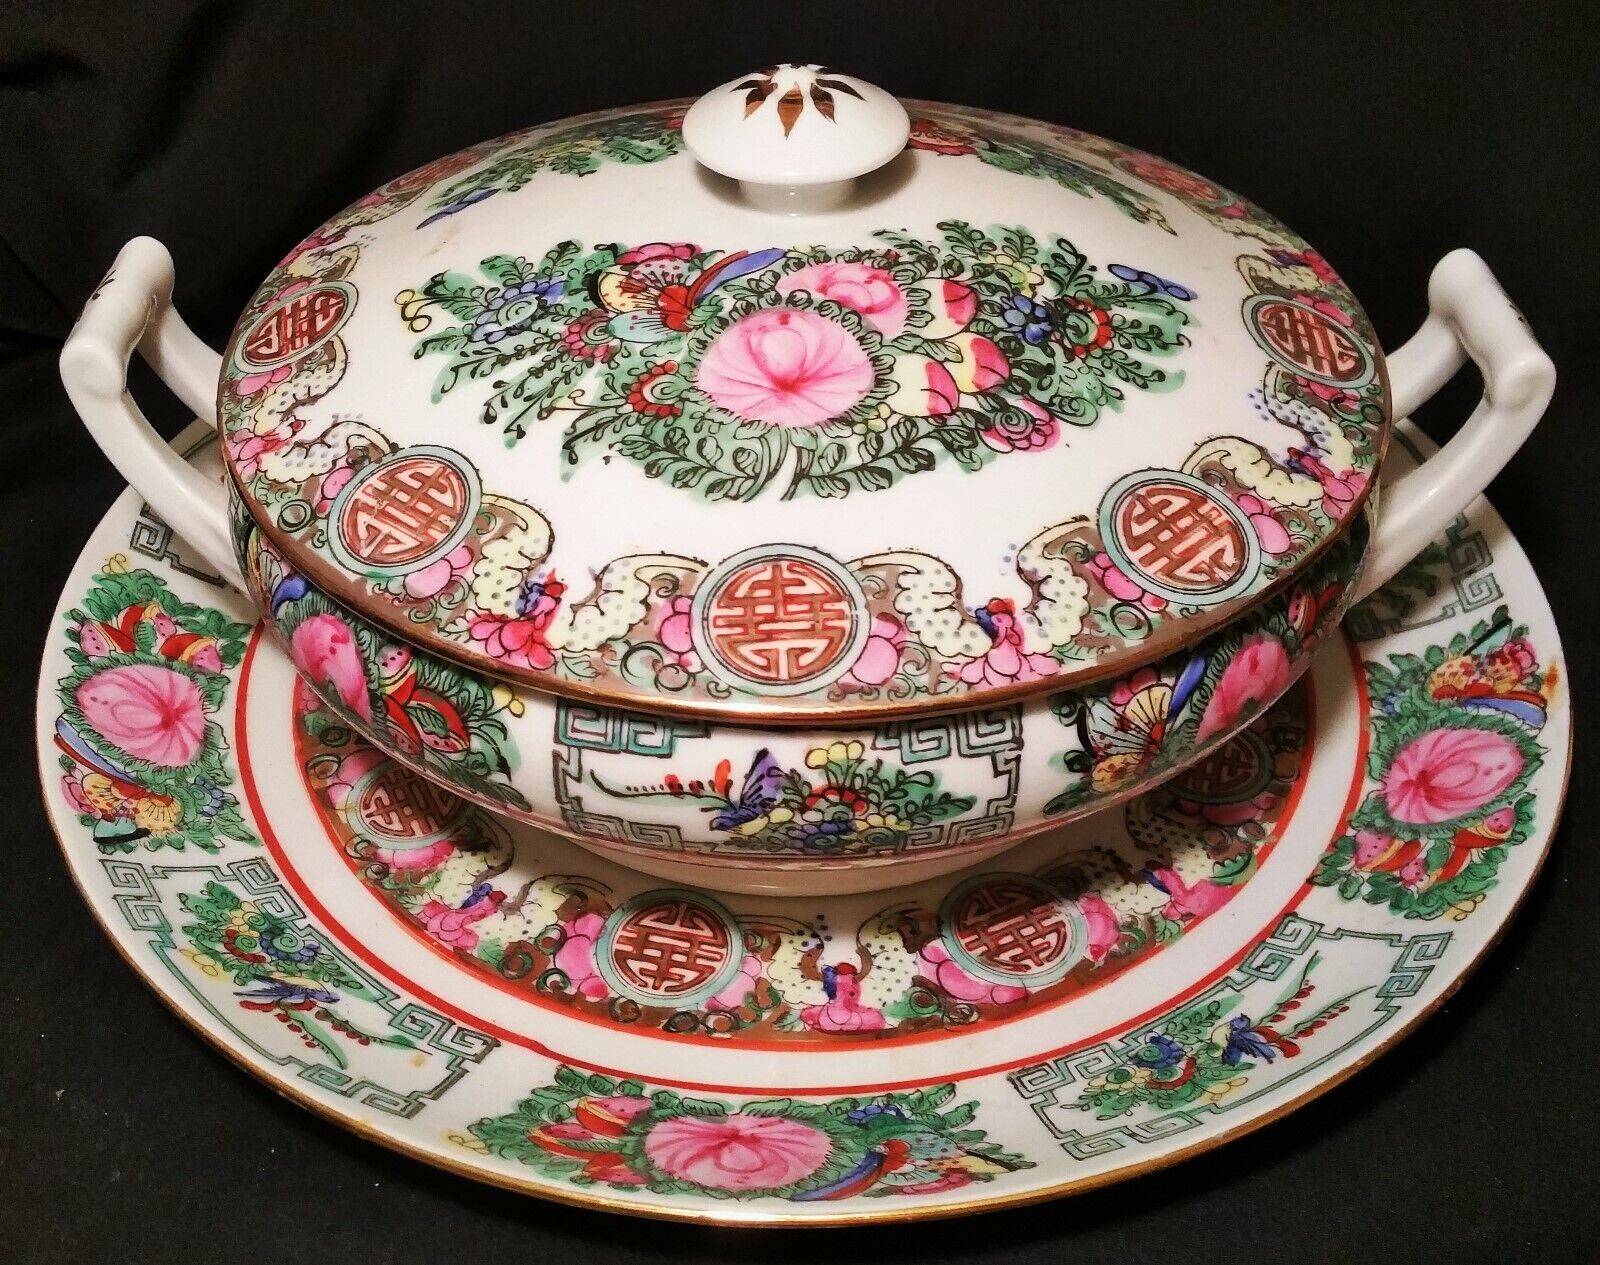 5 ROSE MEDALLION vtg covered serving bowl chinese porcelain plate hong kong art